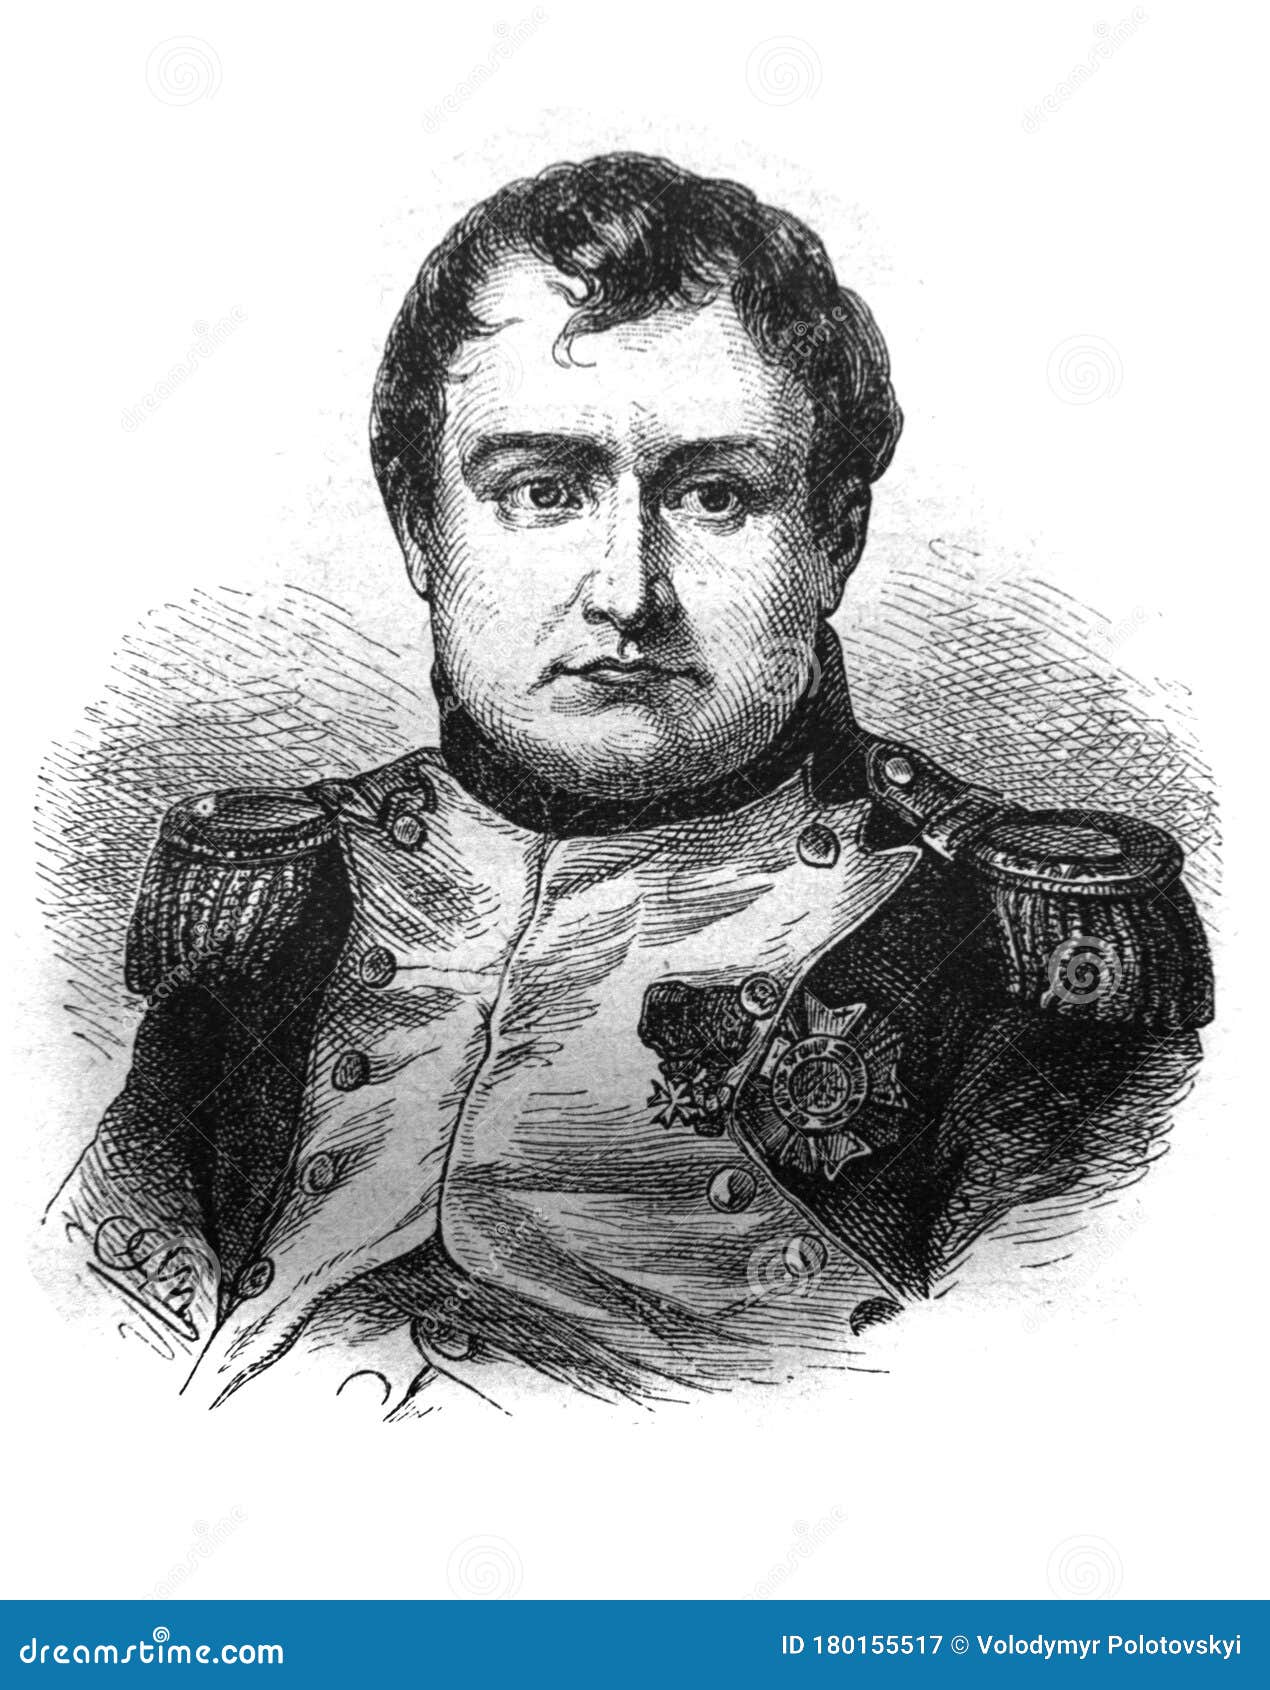 Наполеон Эссе По Истории